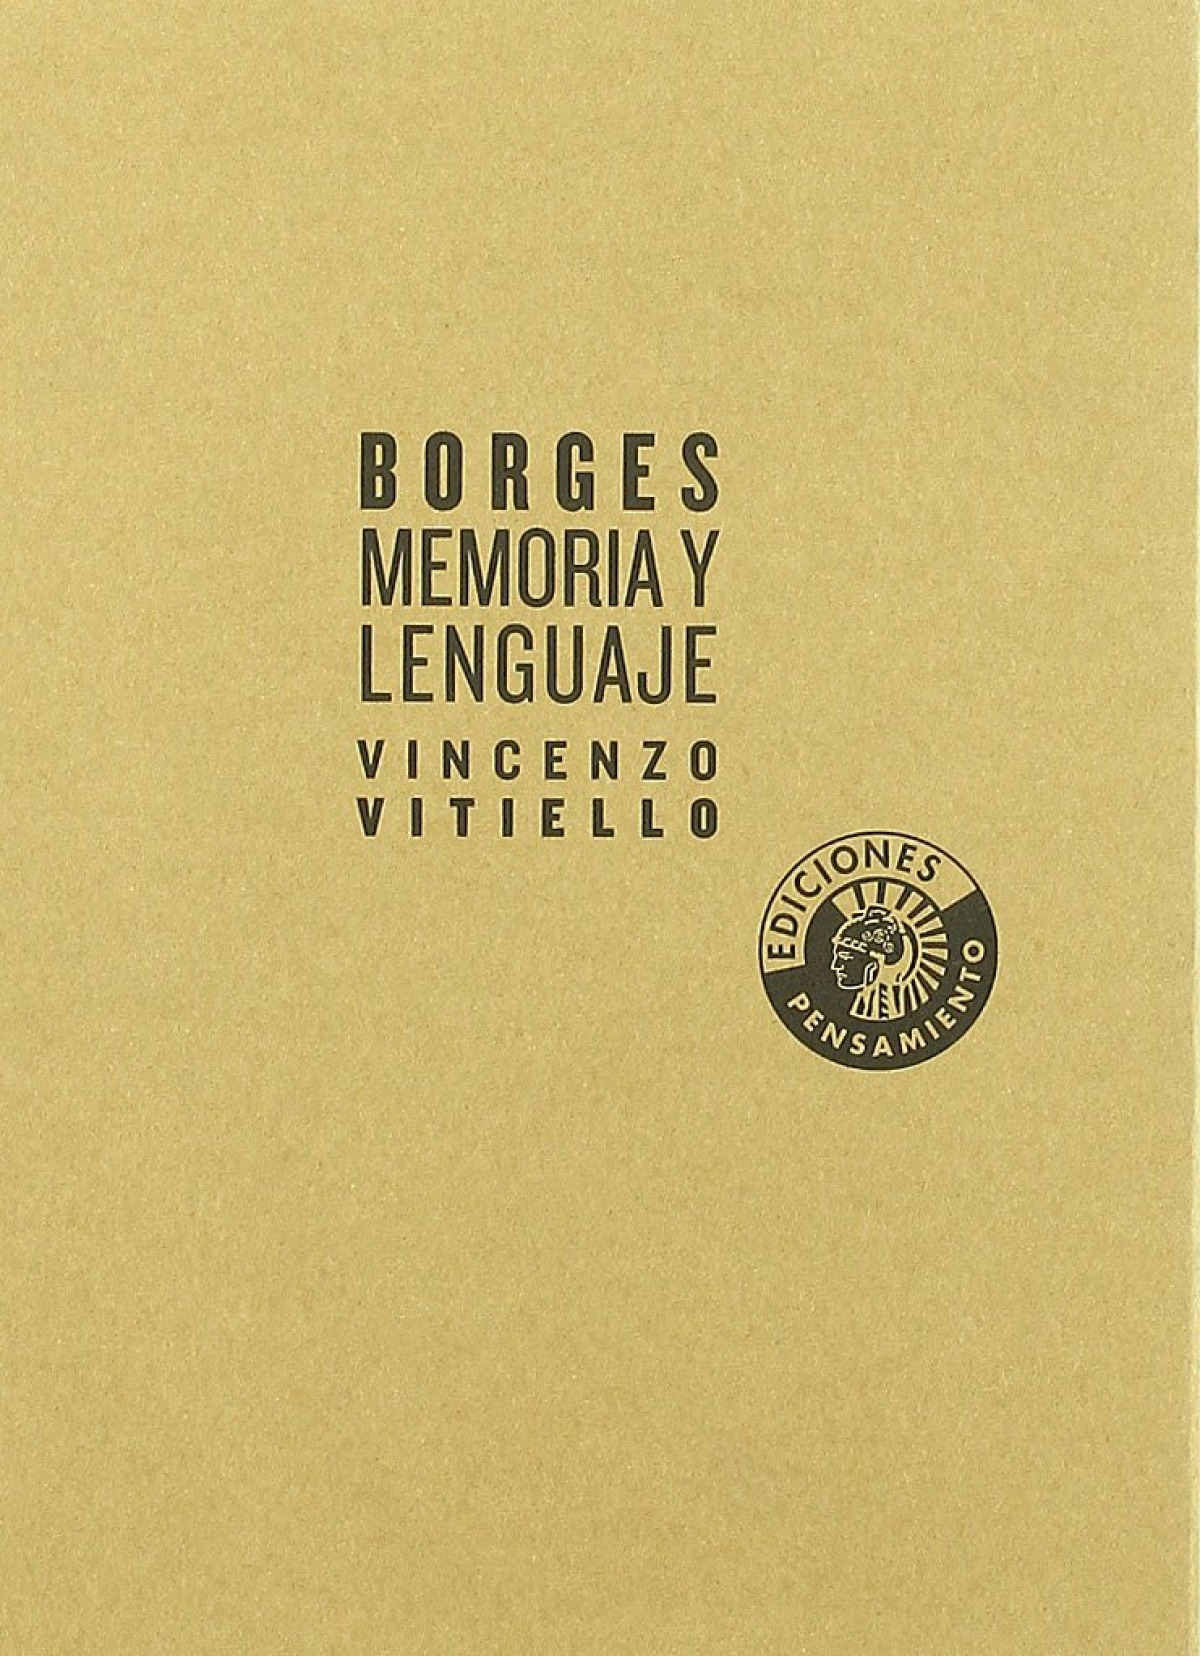 Borges memoria y lenguaje - Vitiello, Vincenzo